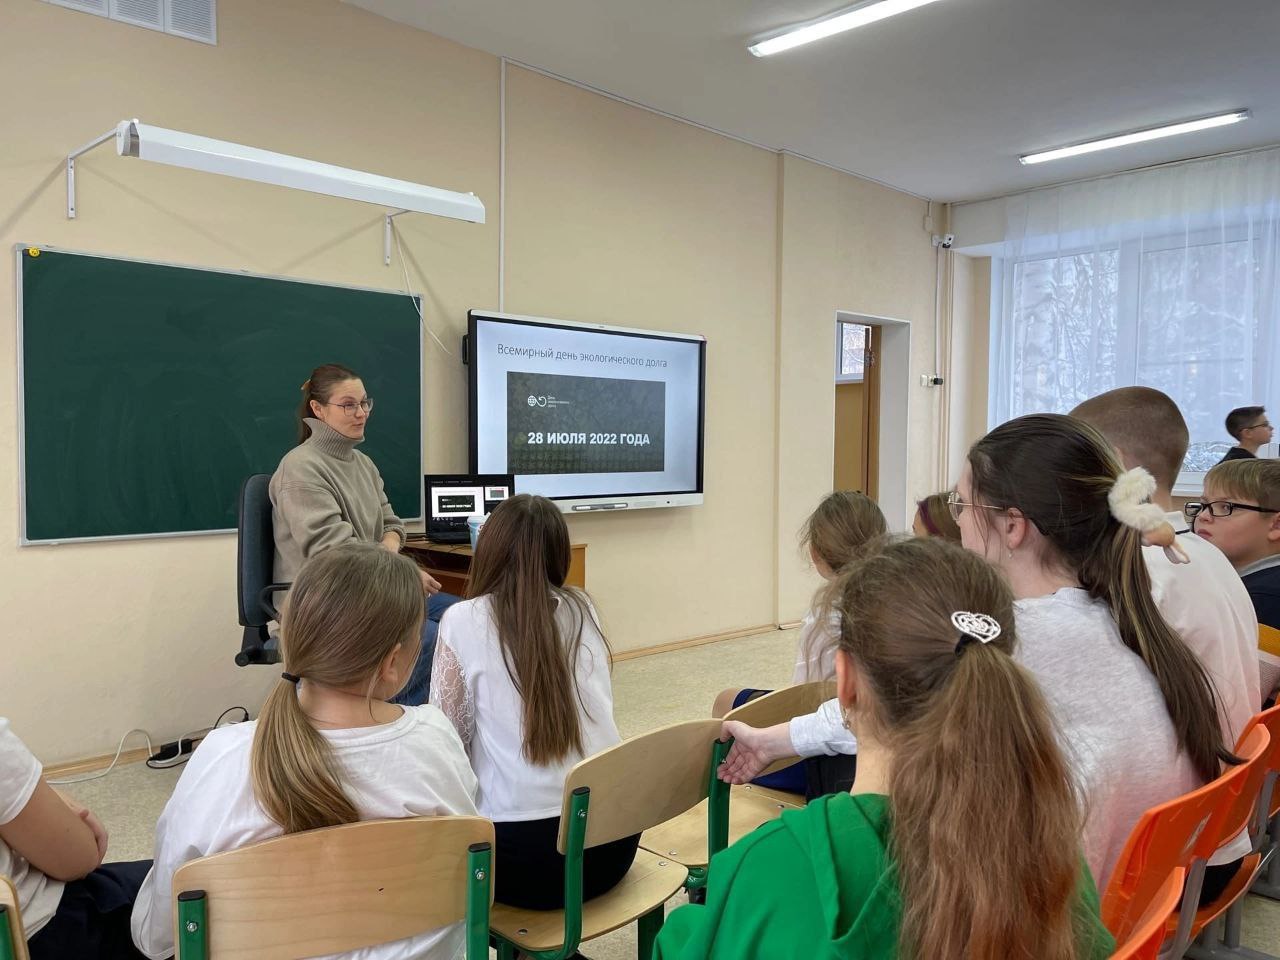 Анна Кондакова с лекцией об экологии в гимназии «Развитие». Фото предоставлено Анной Кондаковой. 